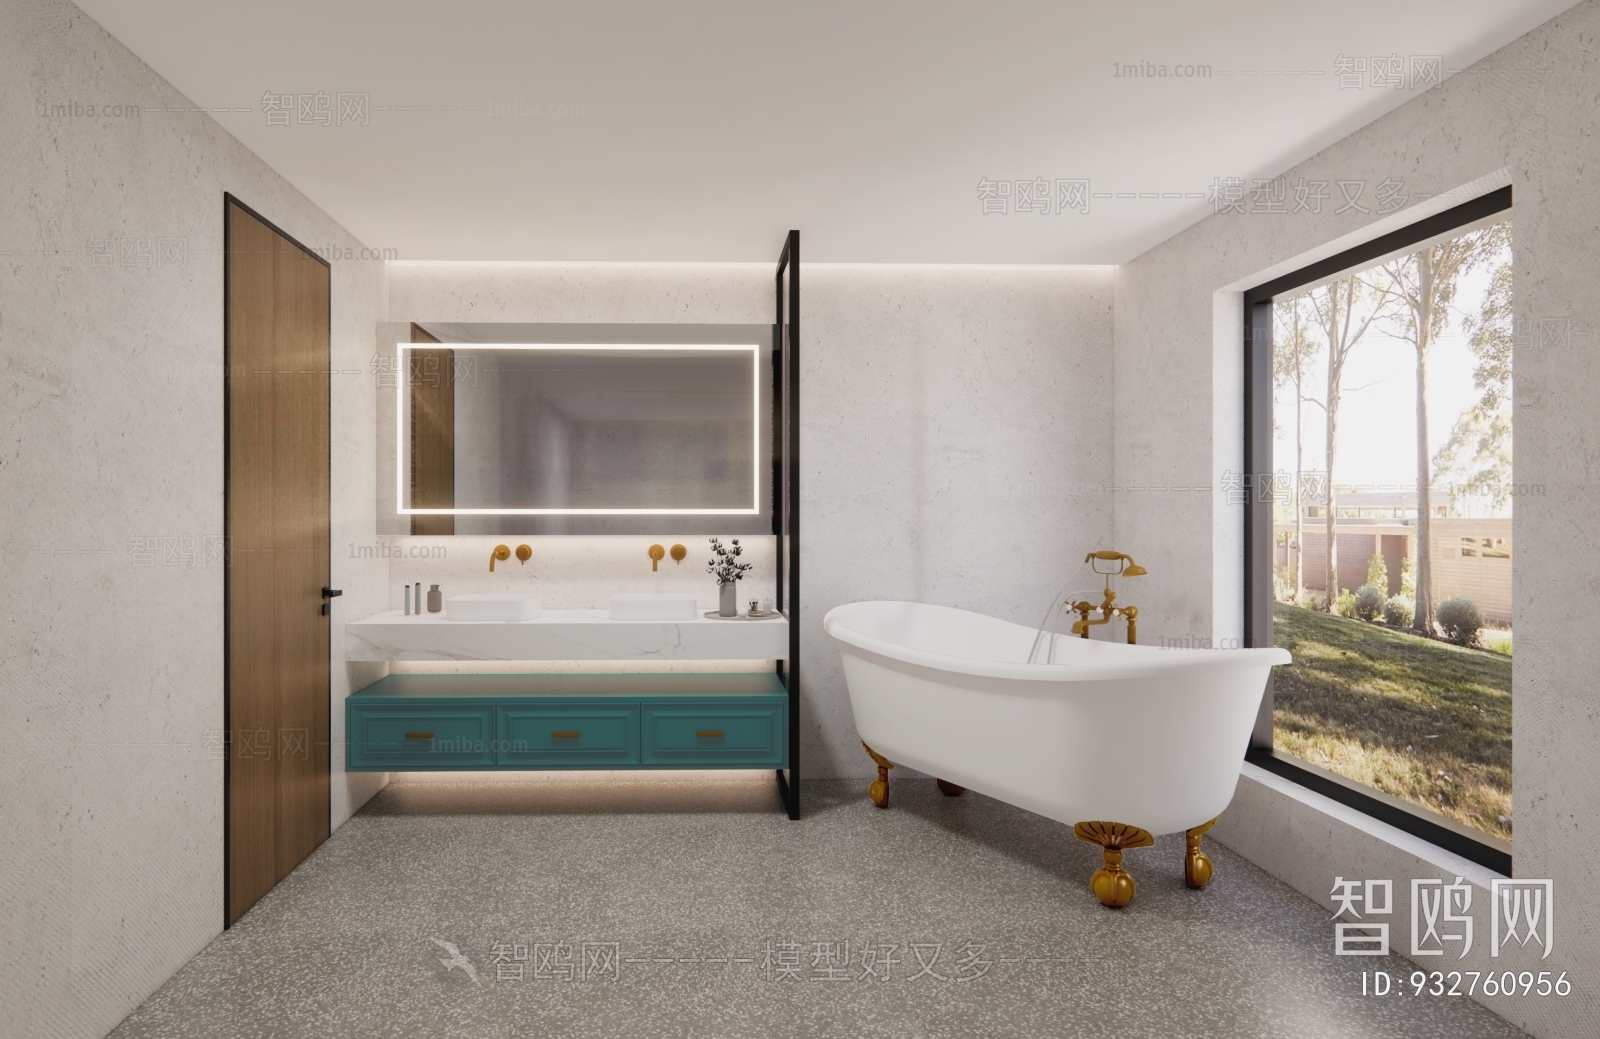 Modern Nordic Style Bathtub